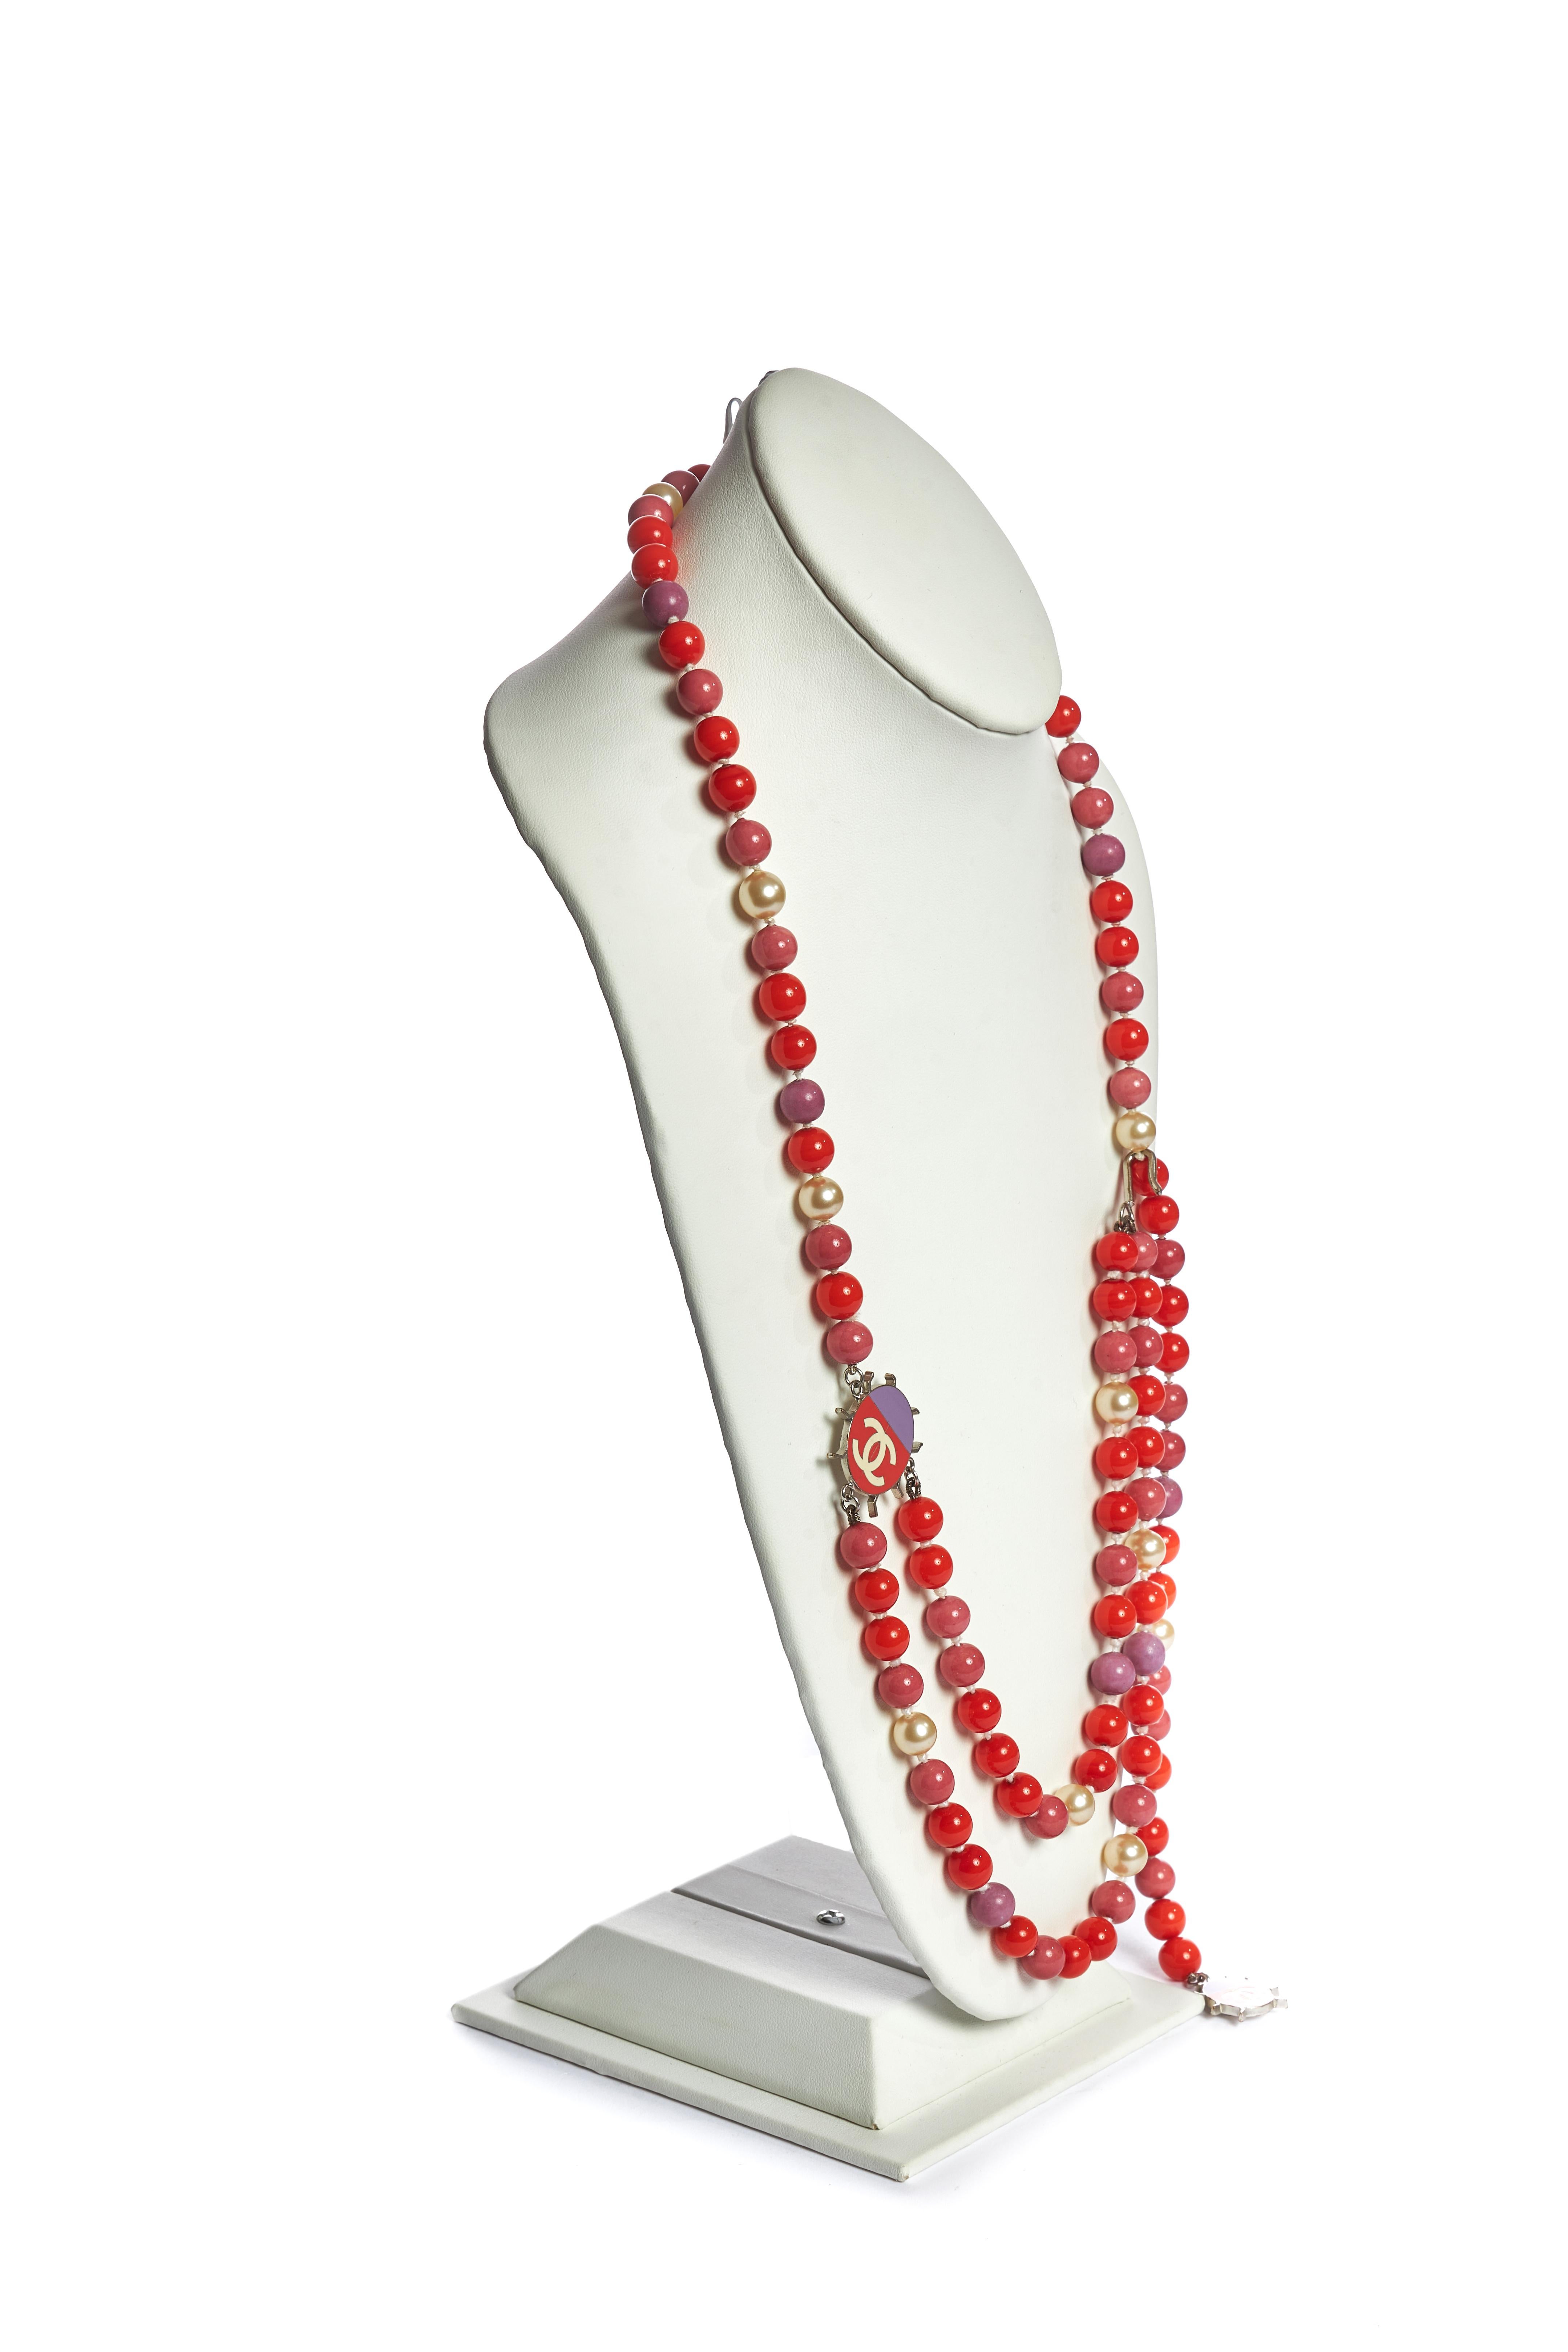 Chanel langer doppelter Gürtel/Halskette aus korallenroten und rosa Gripoix-Perlen mit Perlenakzenten. Kollektion Frühjahr 2004. Anhänger: Länge 1